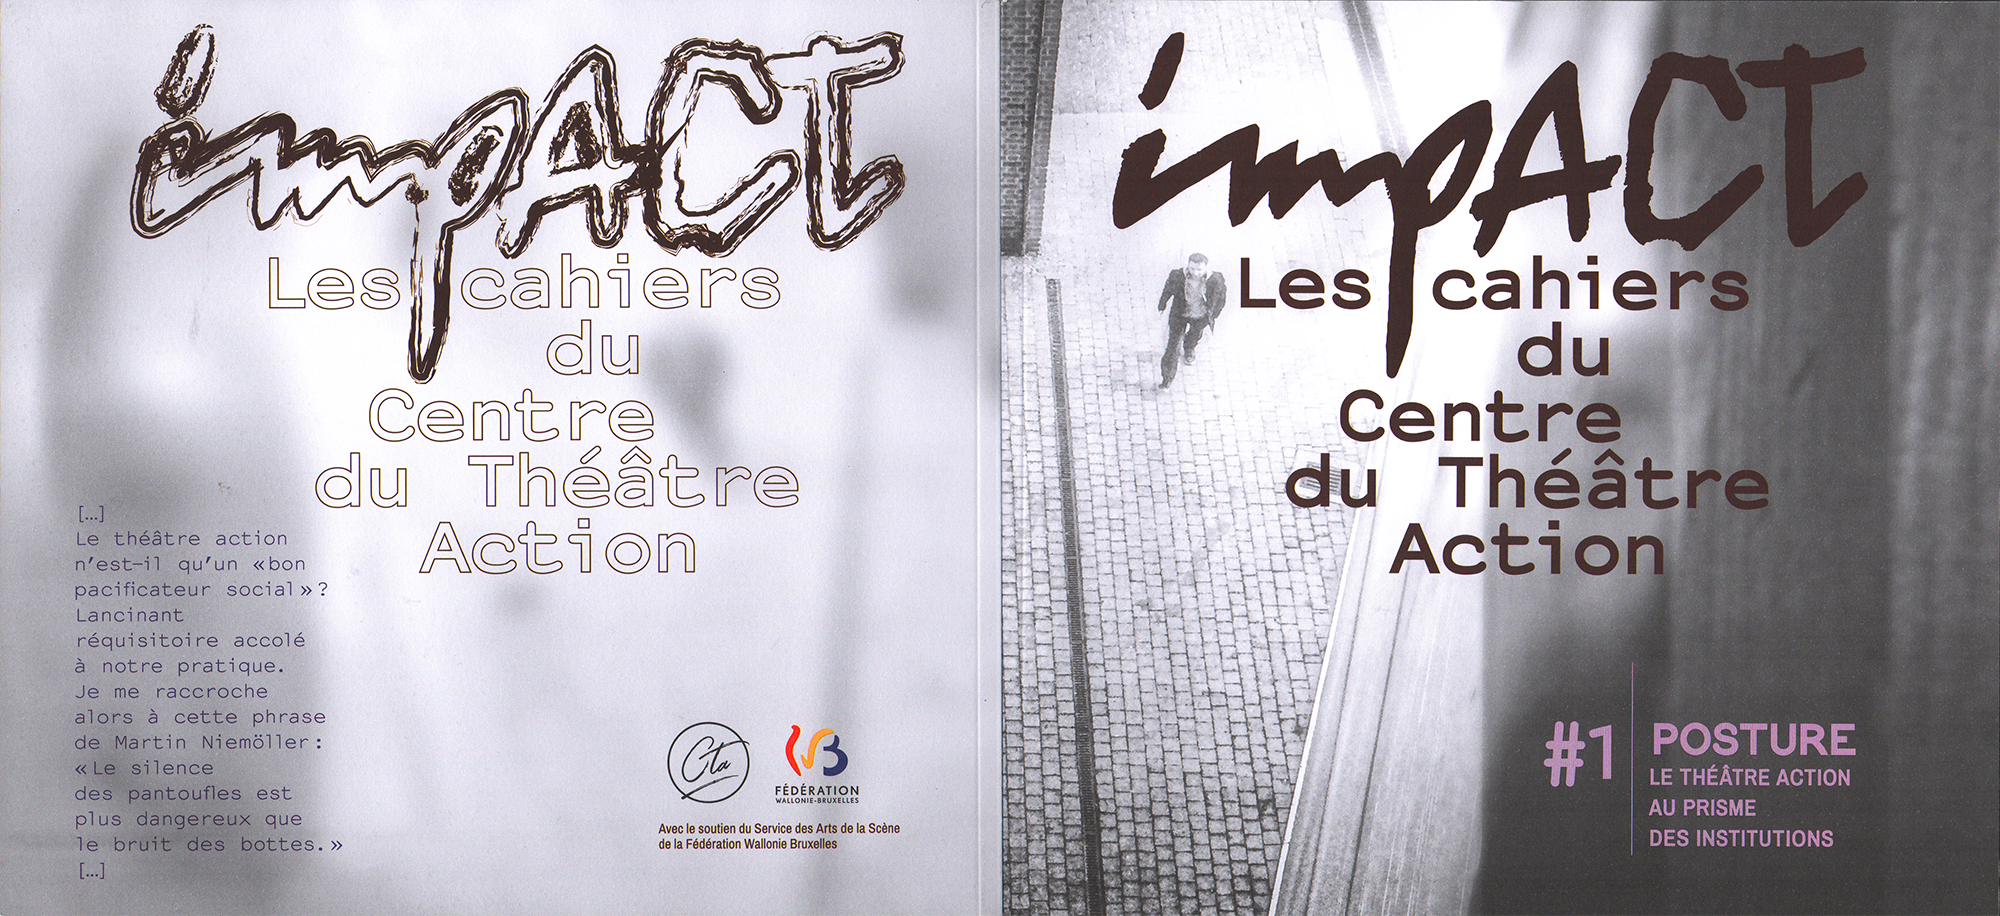 impACT #1, POSTURE : Le Théâtre Action au prisme des institutions, 240x220cm, 2020